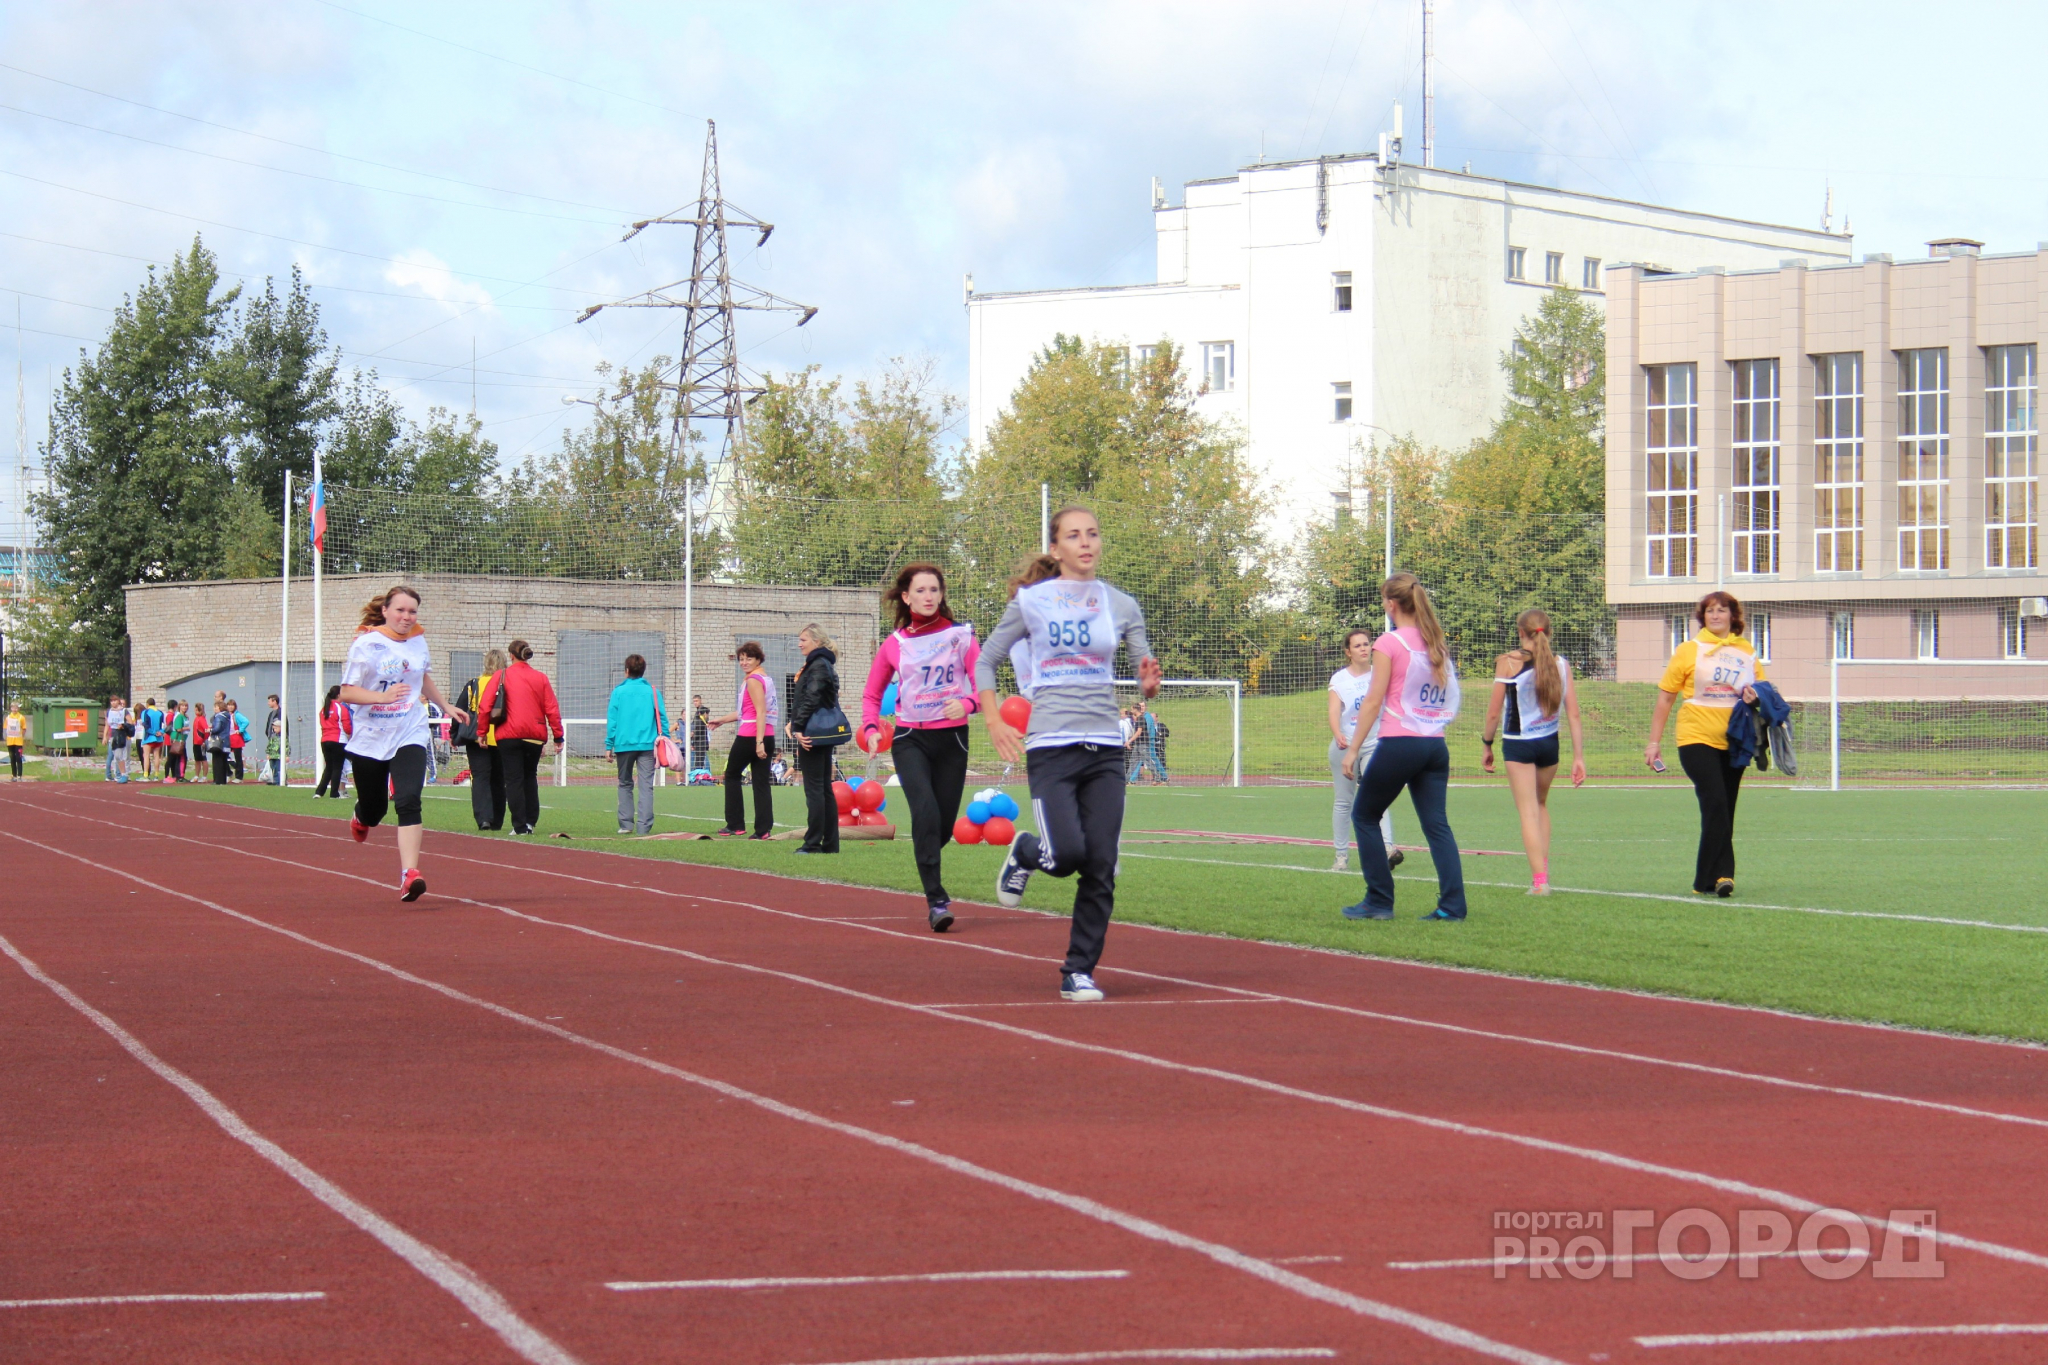 Фитнес-тренер из Йошкар-Олы рассказал, как правильно заниматься бегом